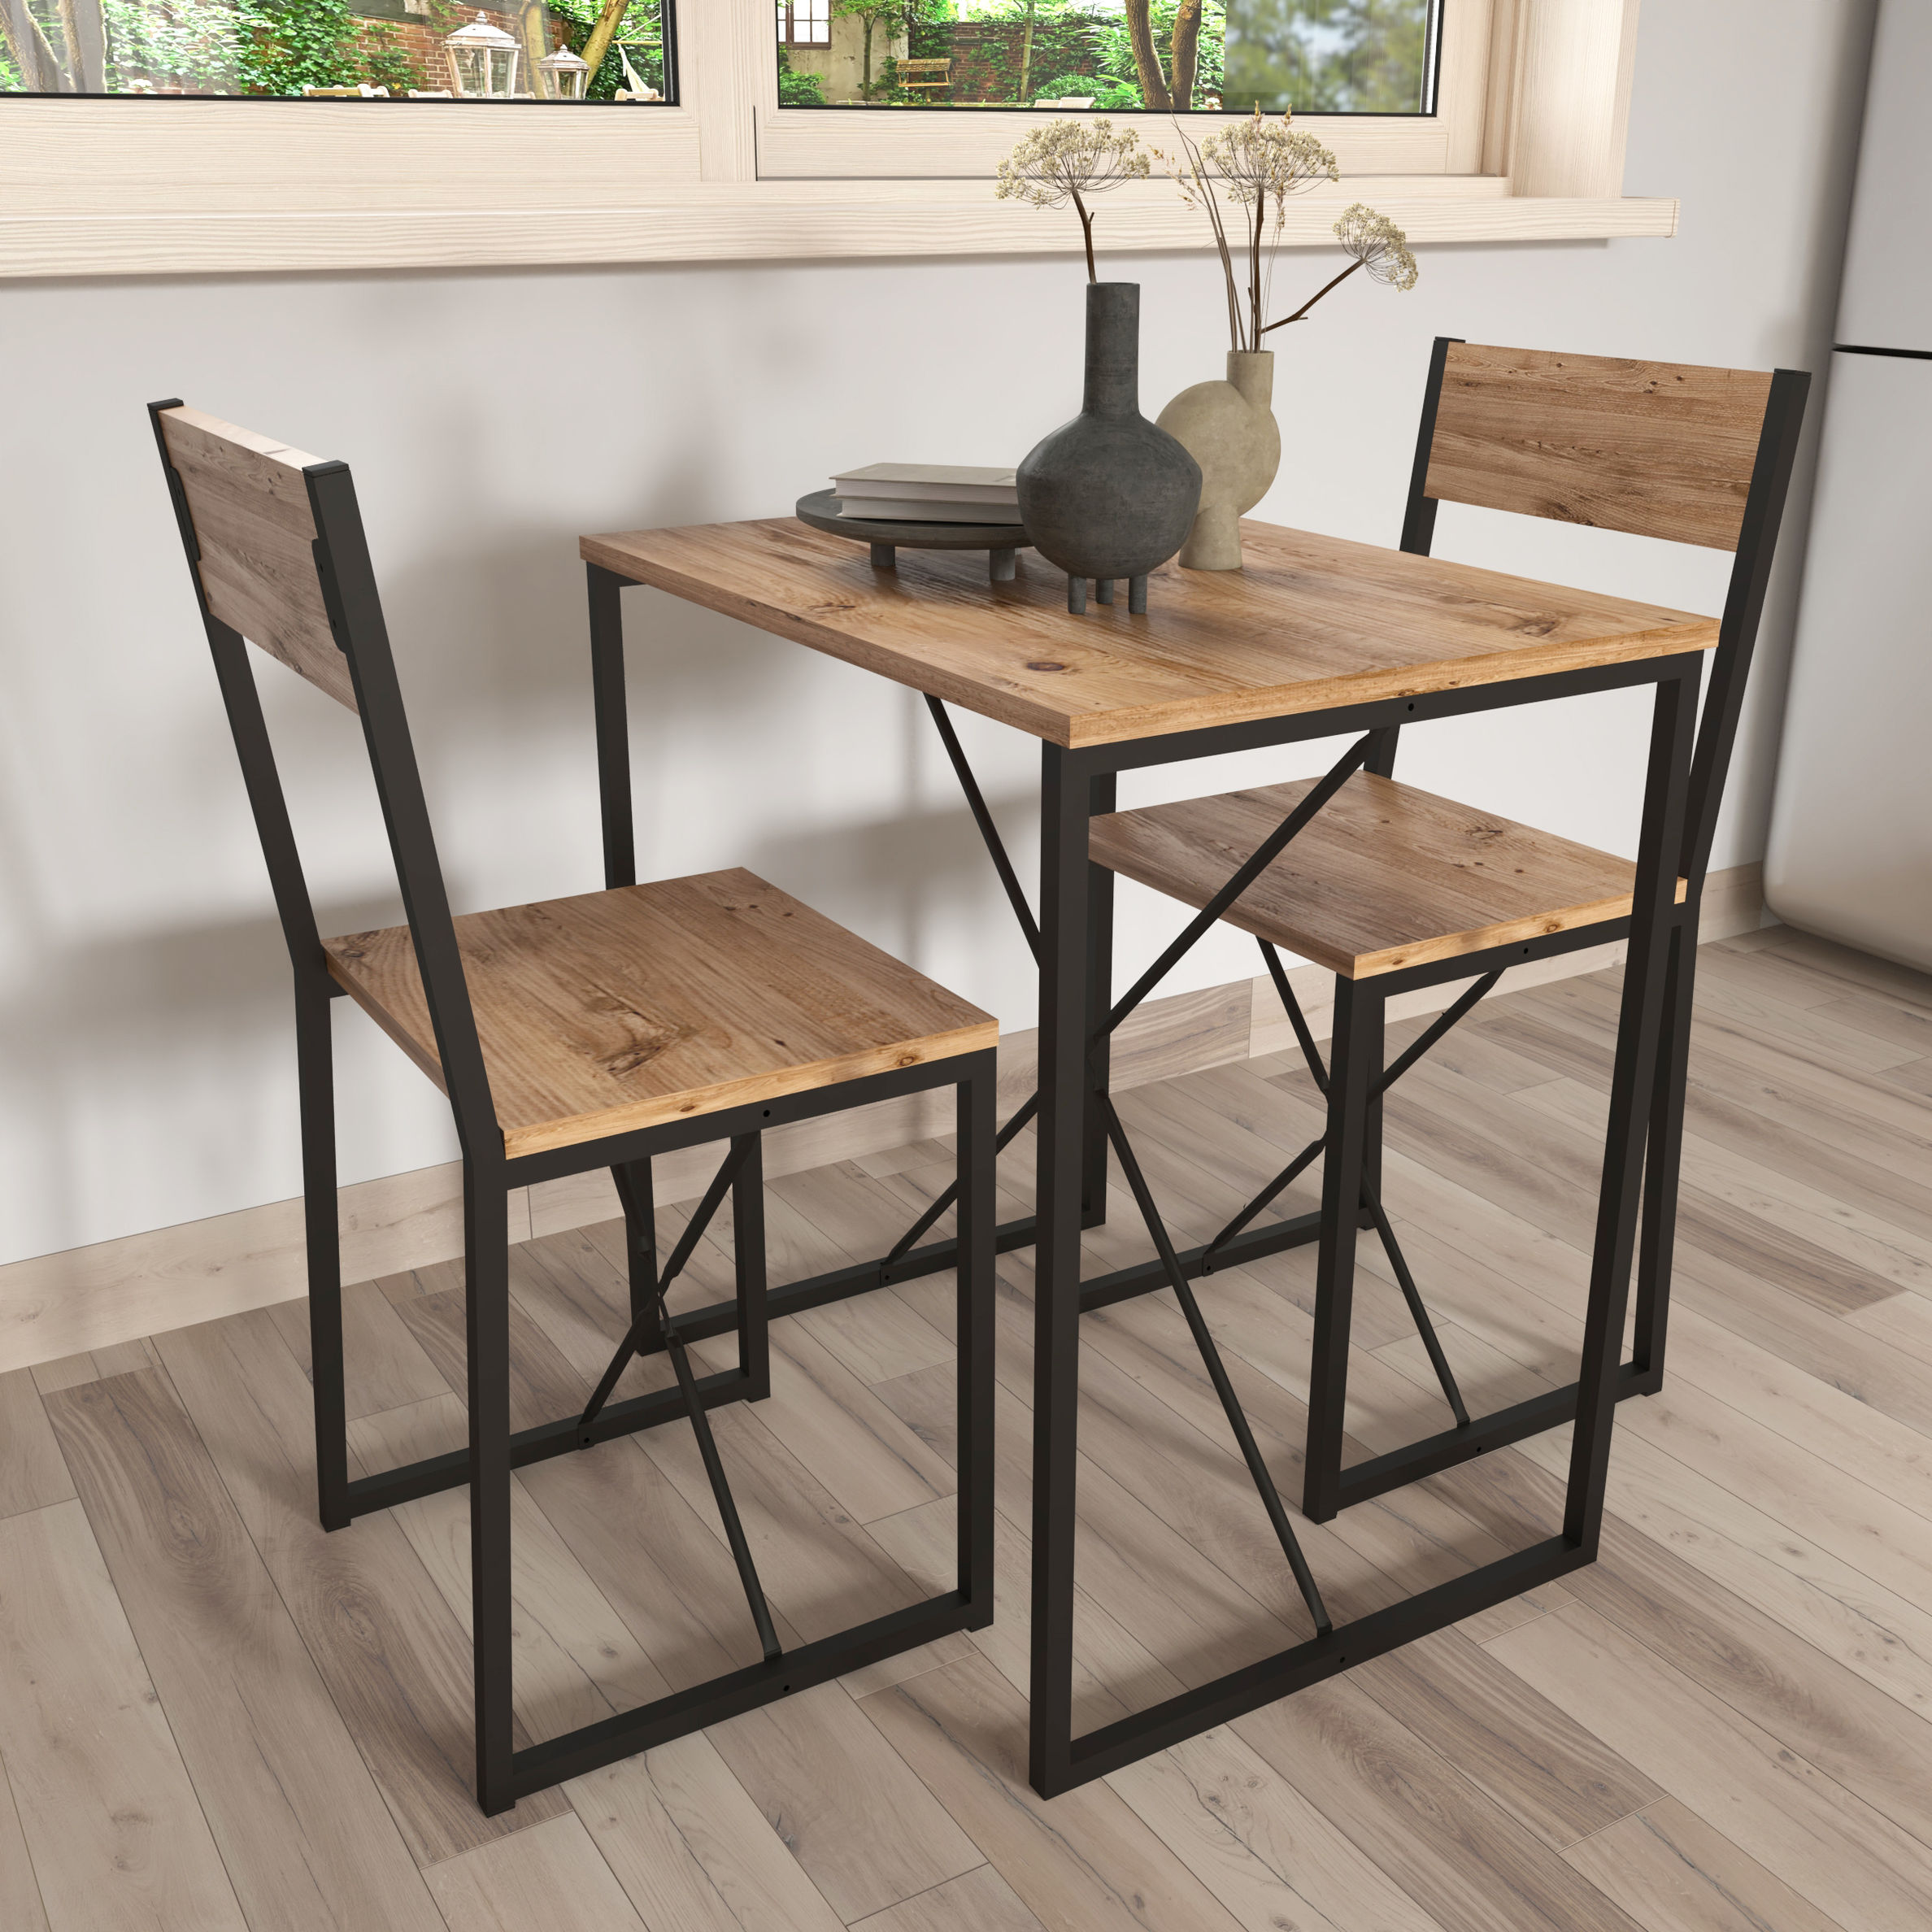 VCM 3-tlg. Holz Metall Essgruppe Küchentisch Esstisch Set Tischgruppe Tisch  Stühle Insasi M Farbe: Honig-Eiche | Weltbild.de